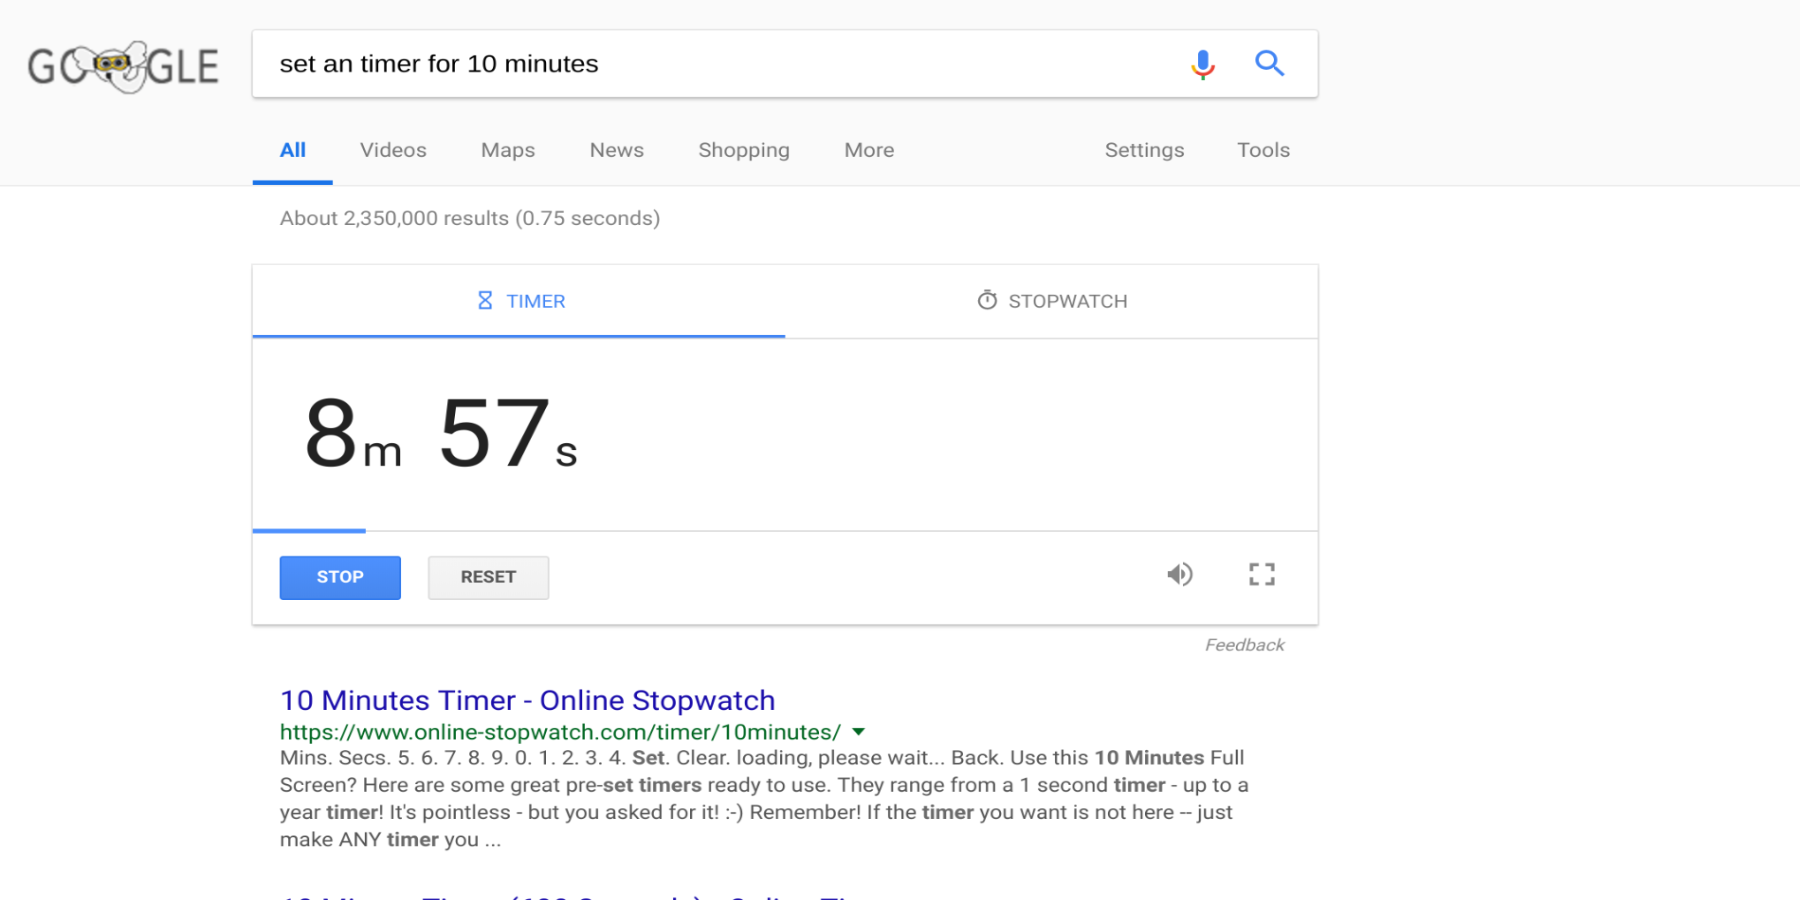 Google set a timer for 12 minutes